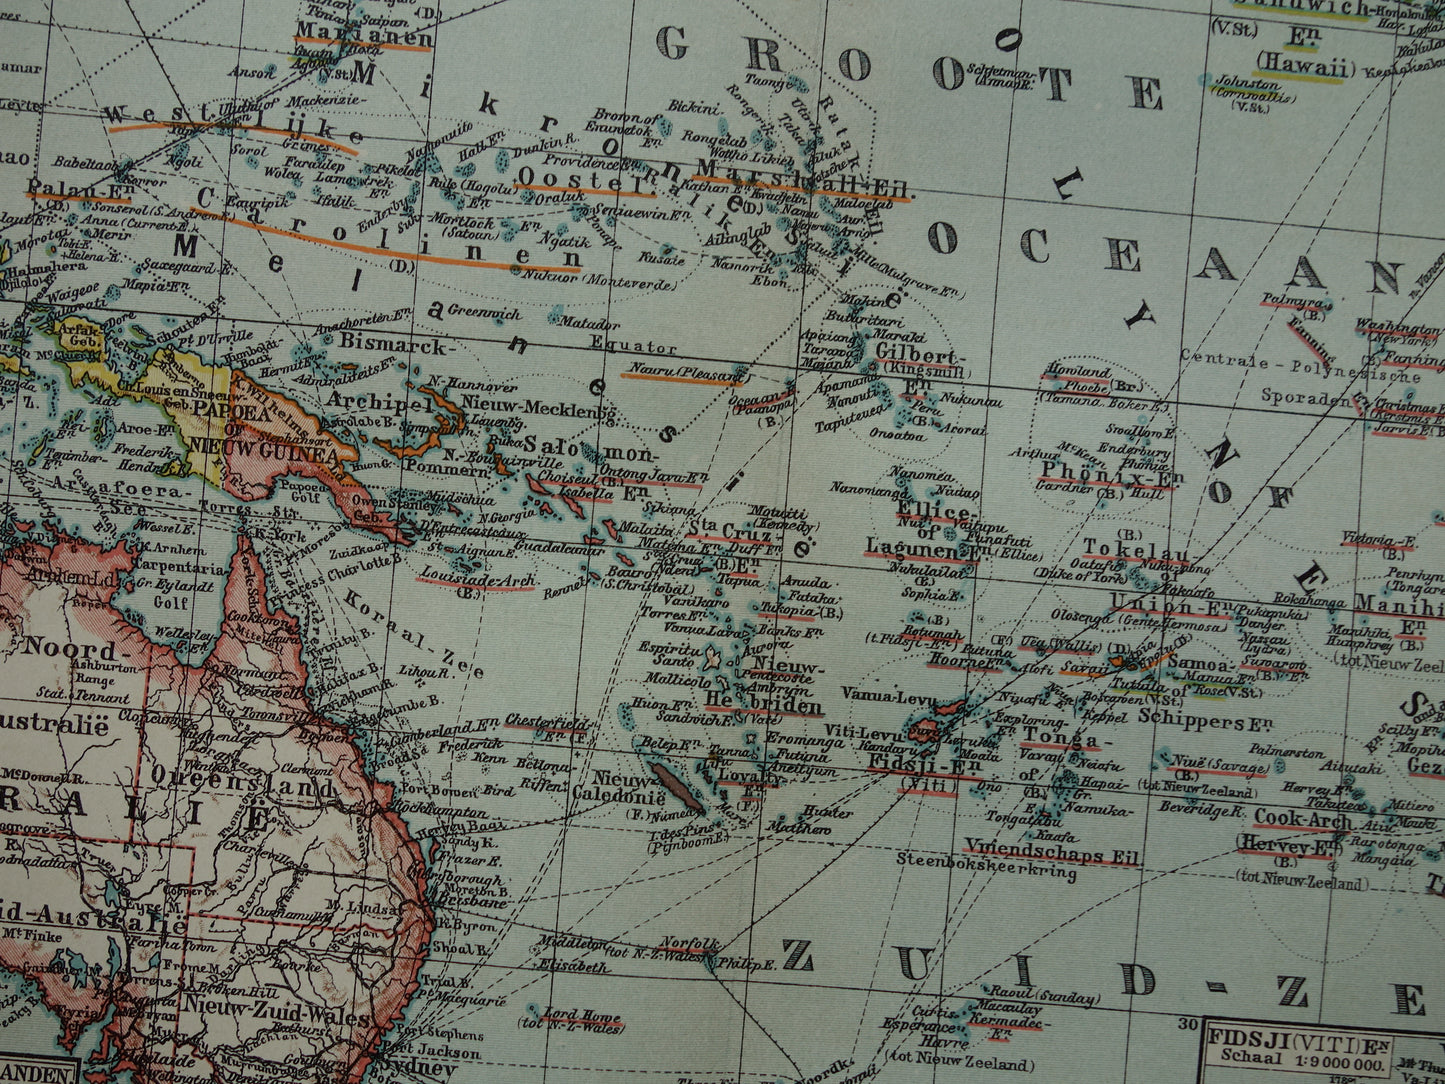 Oude landkaart van Oceanië 1910 originele antieke kaart van Australië Indonesië Polynesië Nieuw-Zeeland vintage print